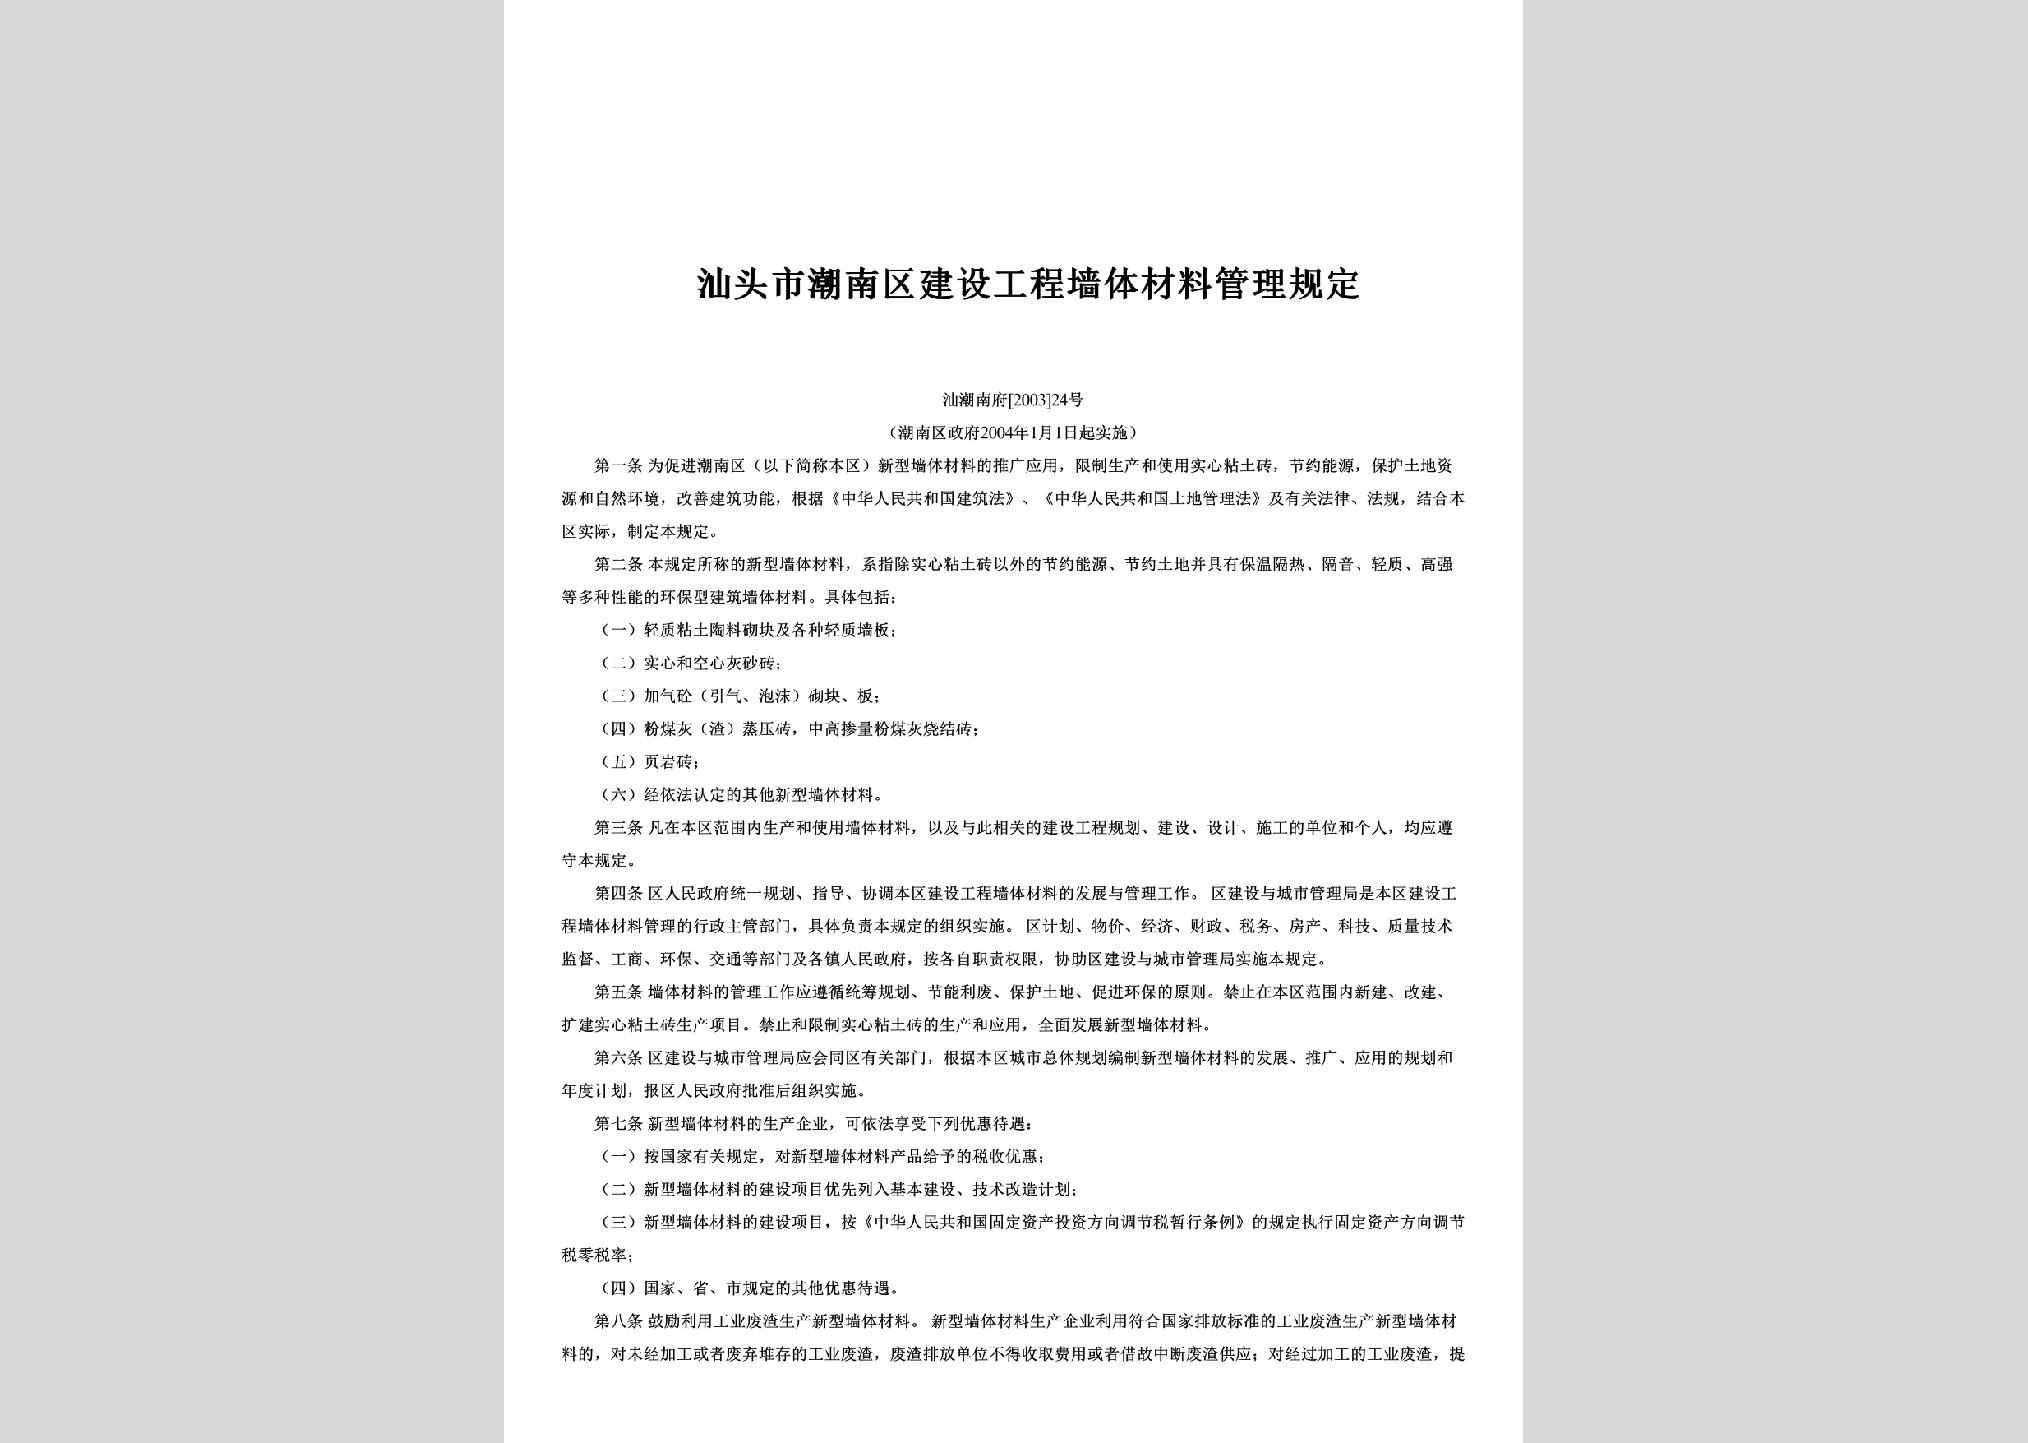 汕潮南府[2003]24号：汕头市潮南区建设工程墙体材料管理规定